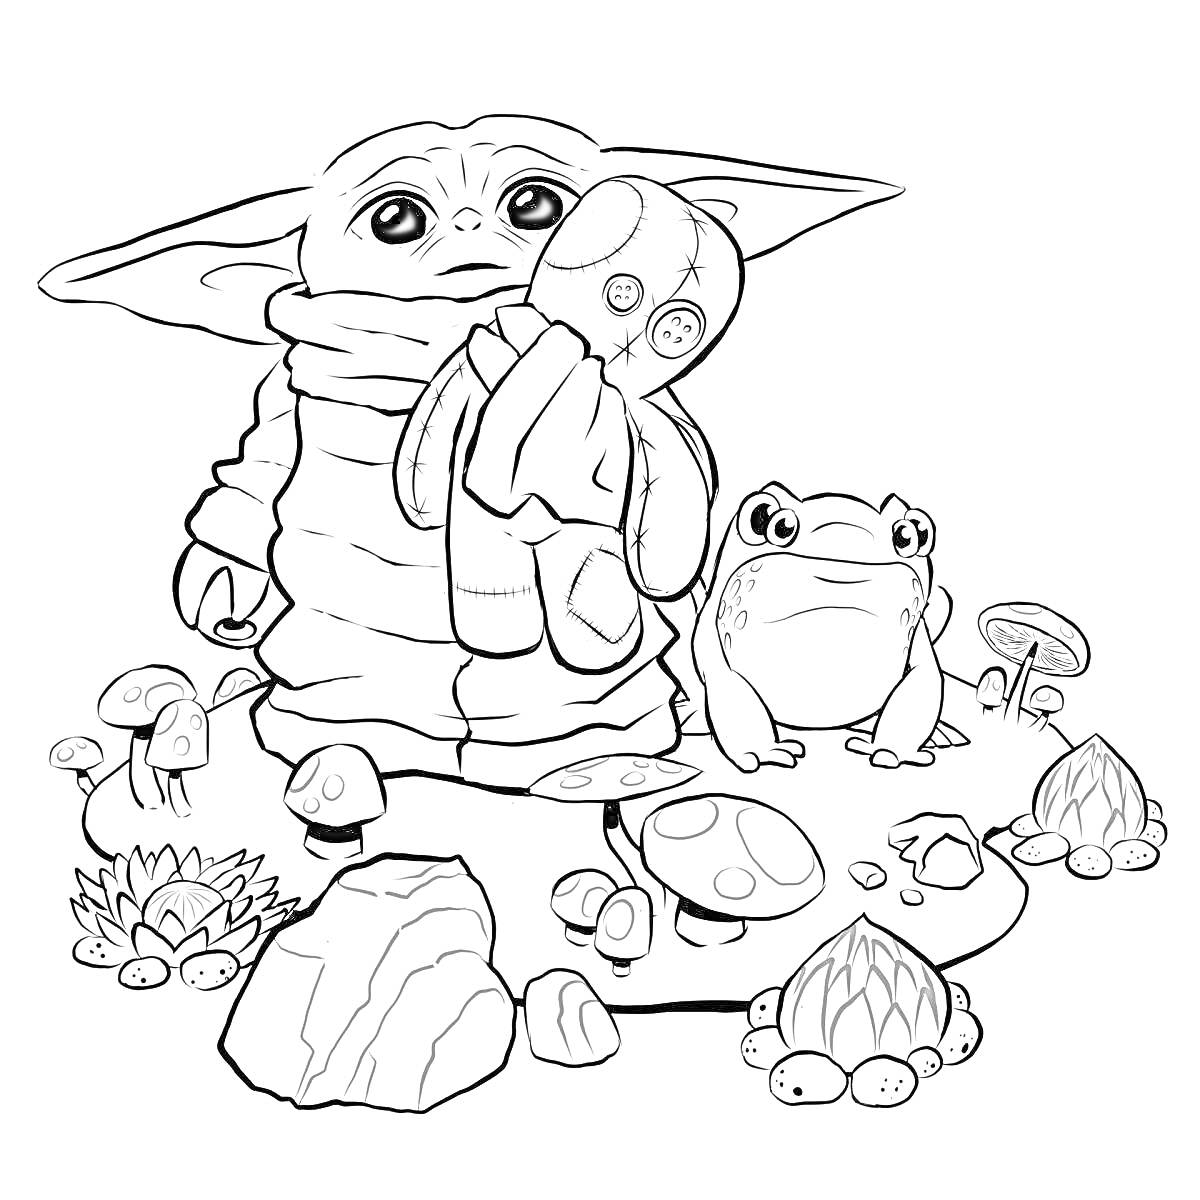 РаскраскаРебёнок Йода с игрушкой, лягушка, грибы, камни и растения